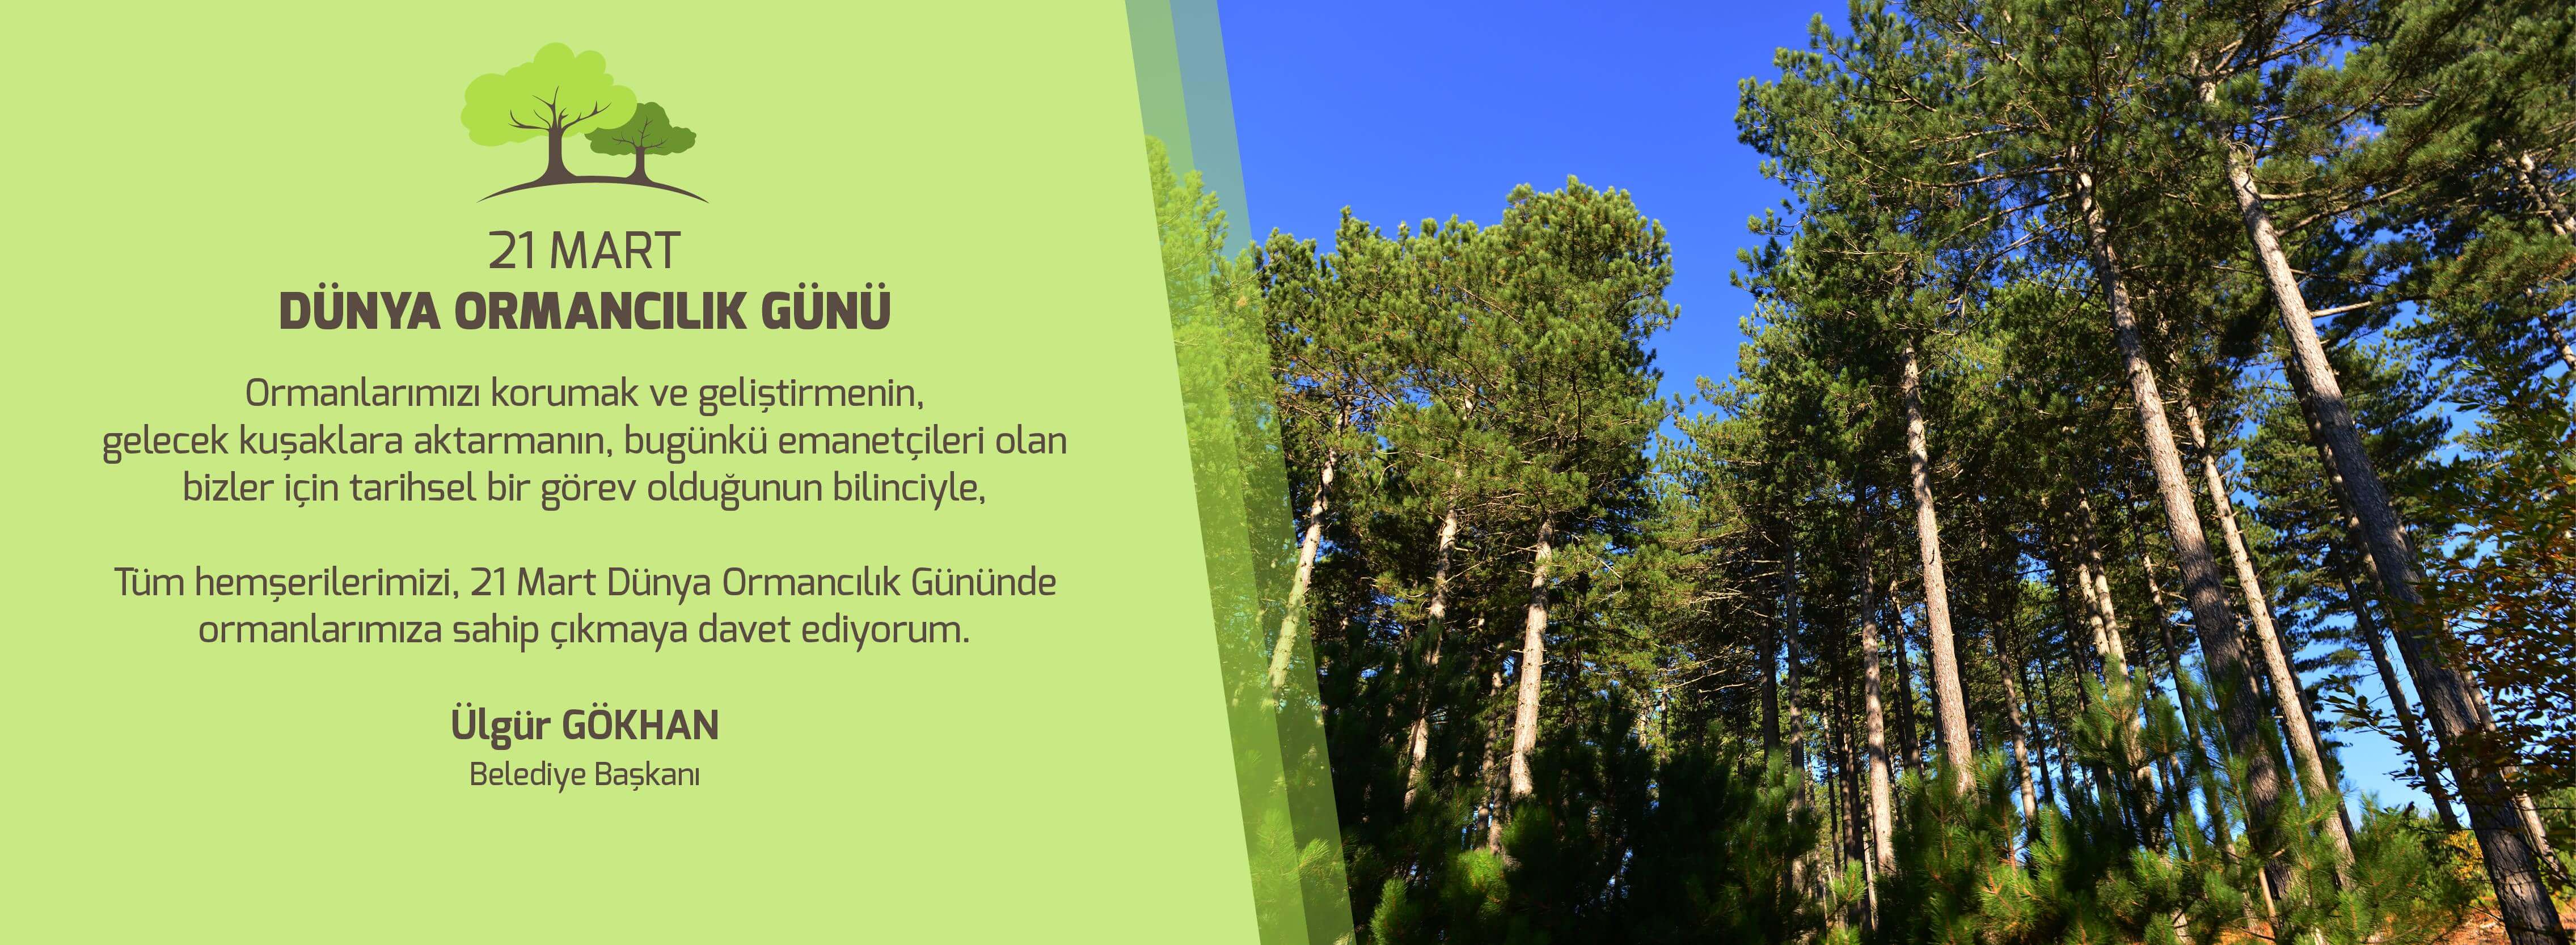 Belediye Başkanı Sayın Ülgür Gökhan'ın 21 Mart Dünya Ormancılık Günü Mesajı...